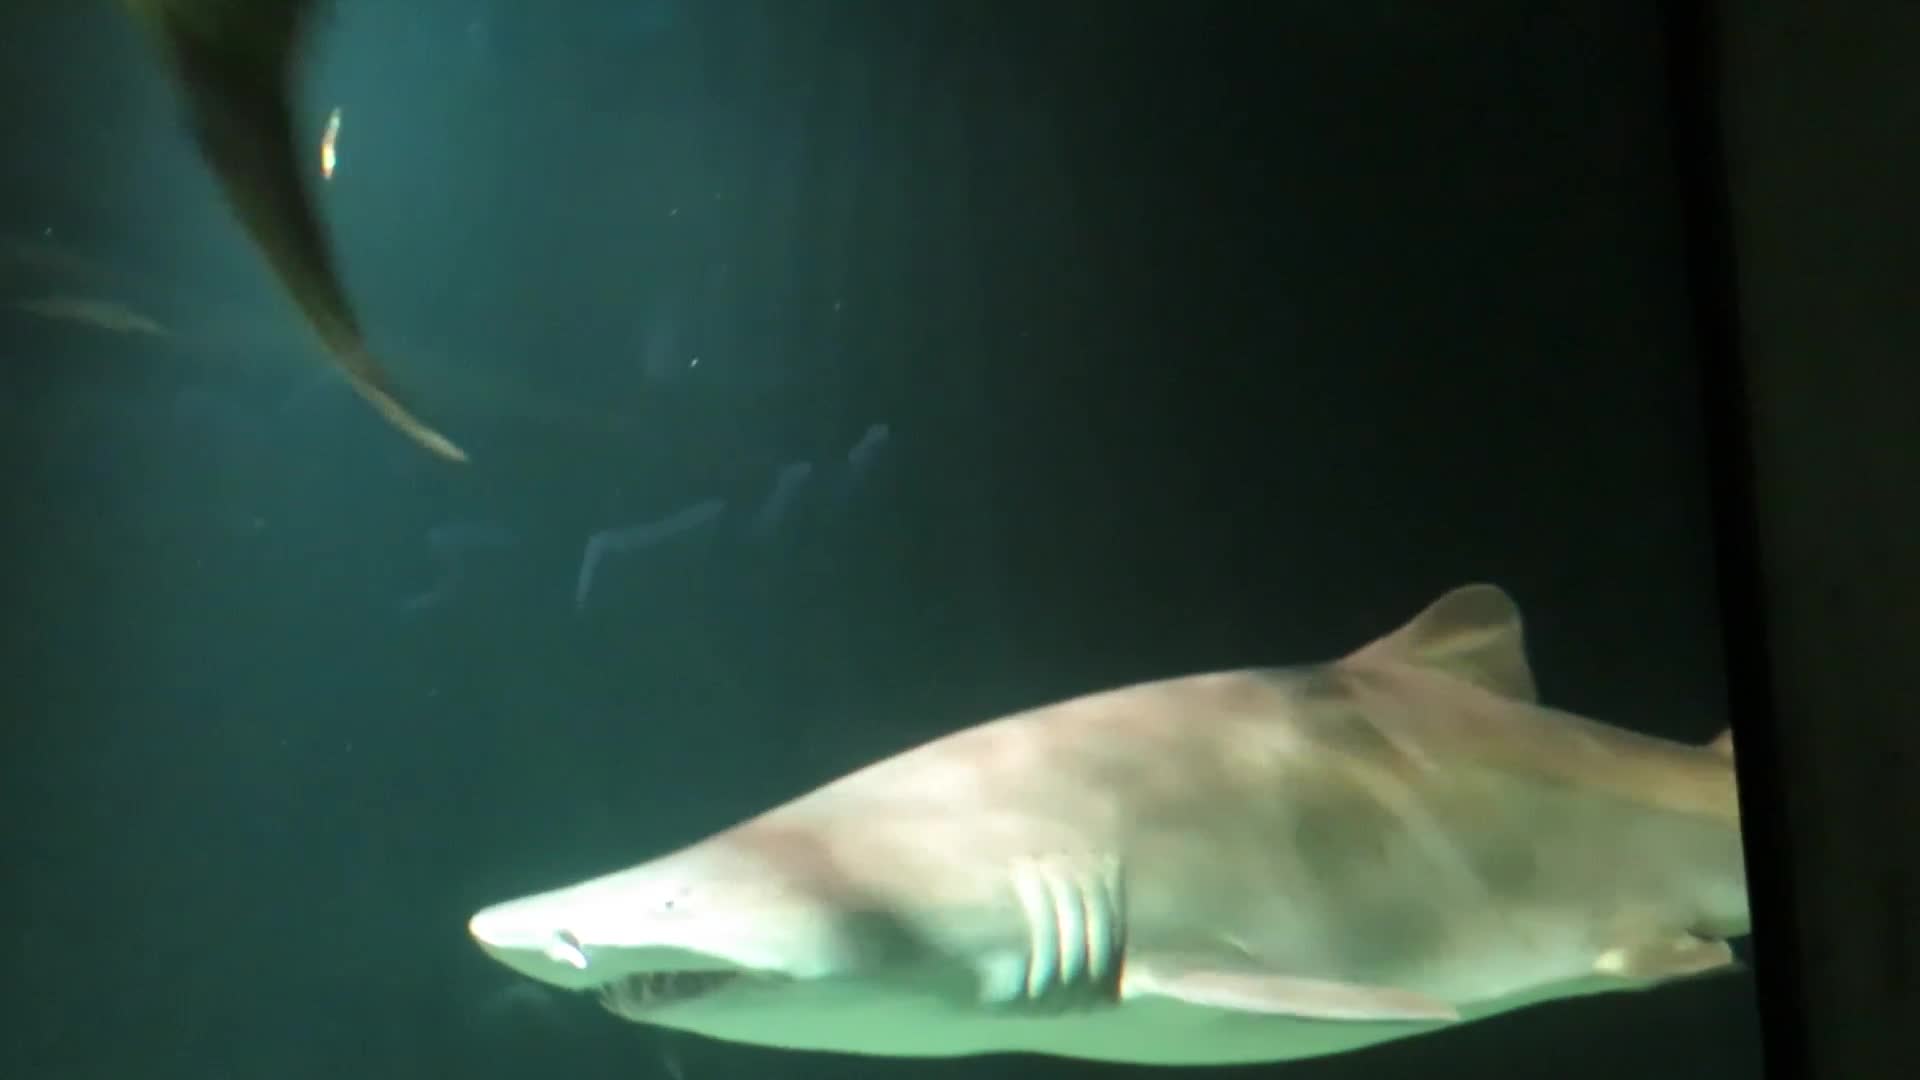 Baltimore Aquarium - Sharks